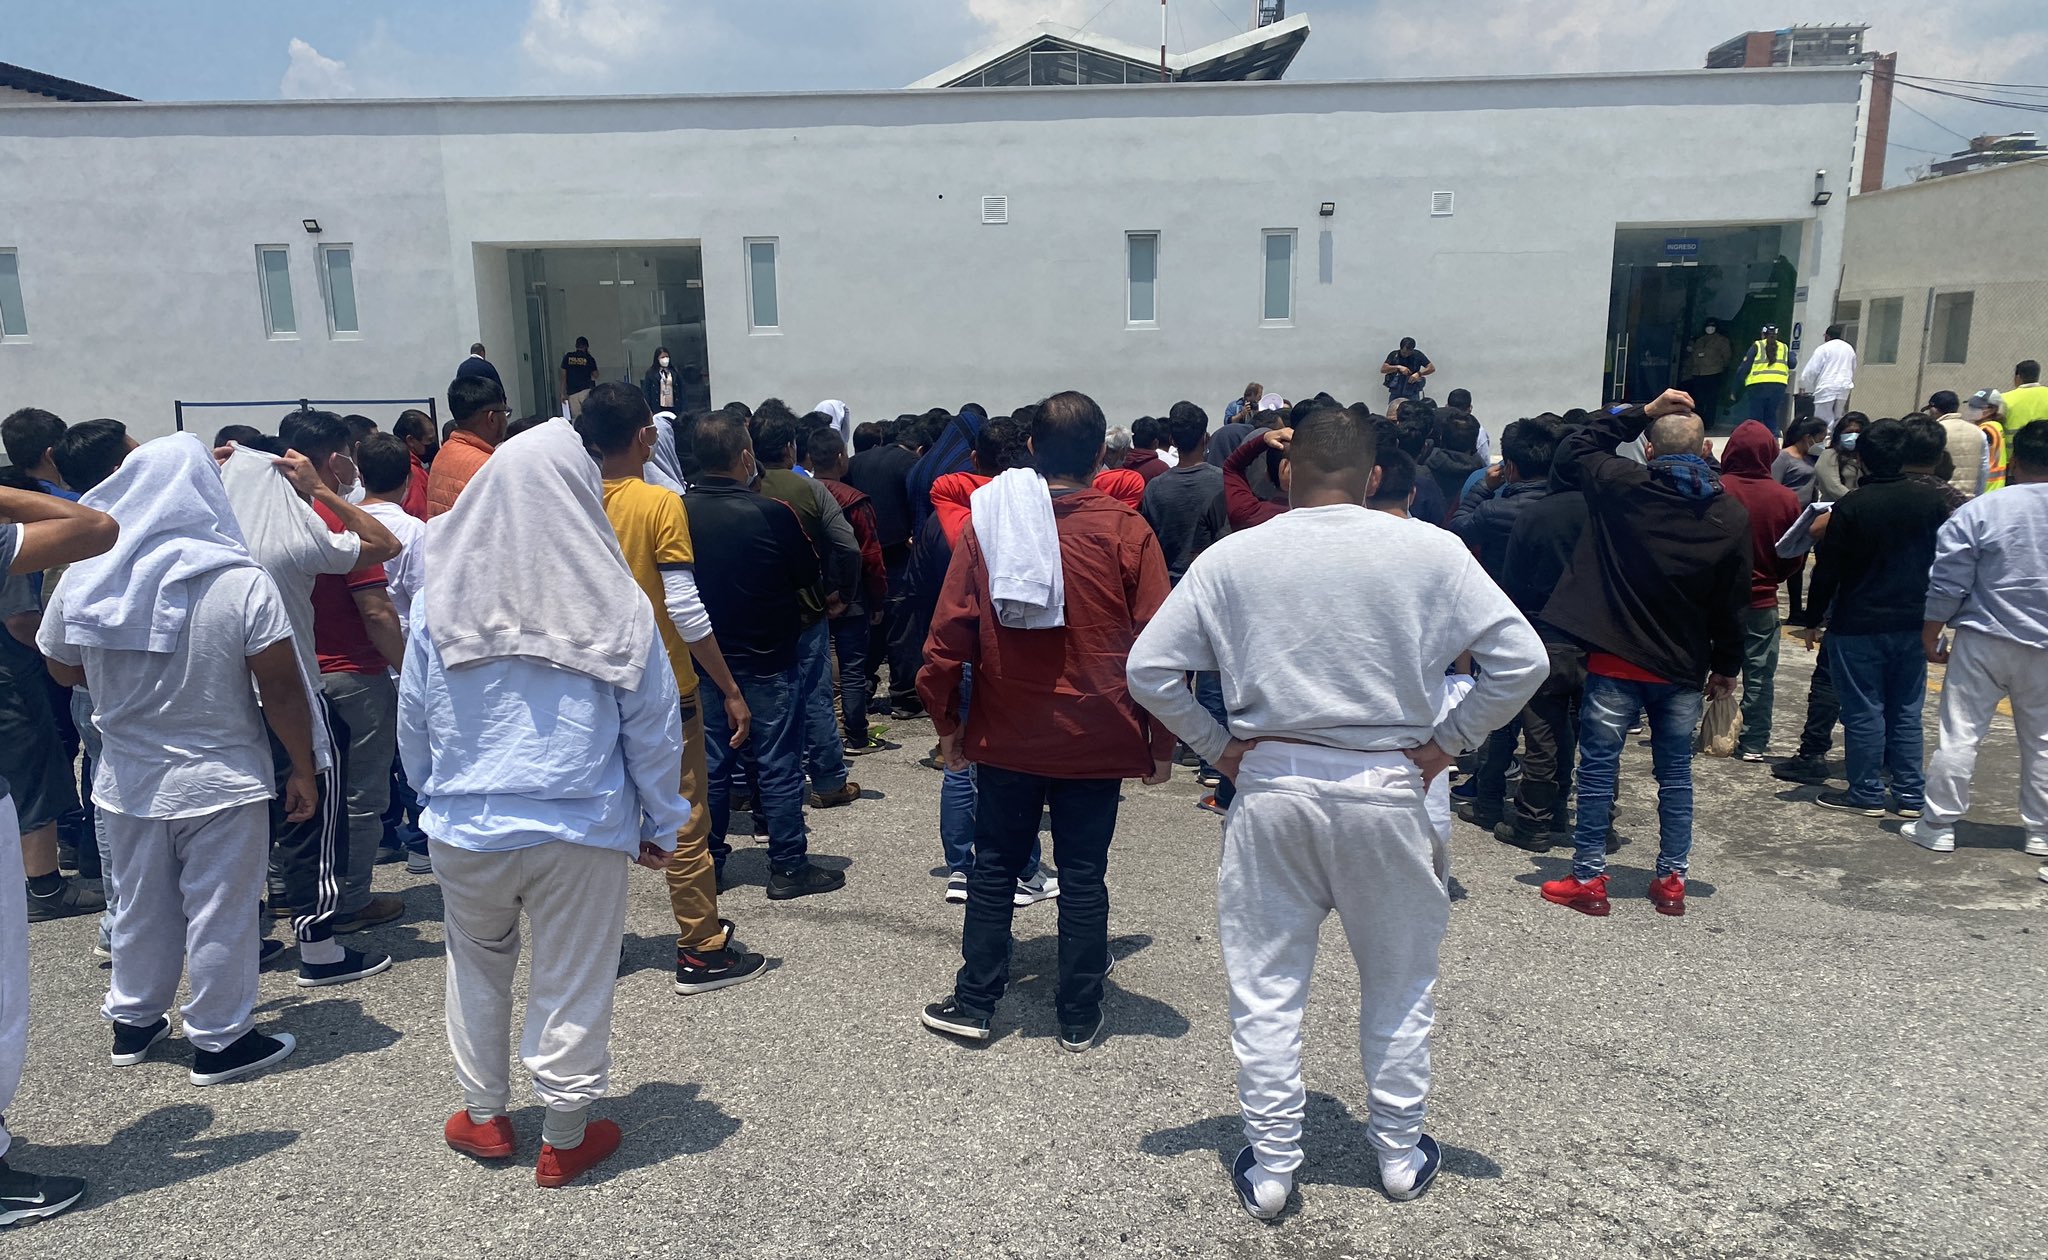 Ciento quince guatemaltecos arribaron a Guatemala desde Estados Unidos en el primer vuelo de deportados bajo el Título 8. (Foto Prensa Libre: Tomada de @MigracionGuate)